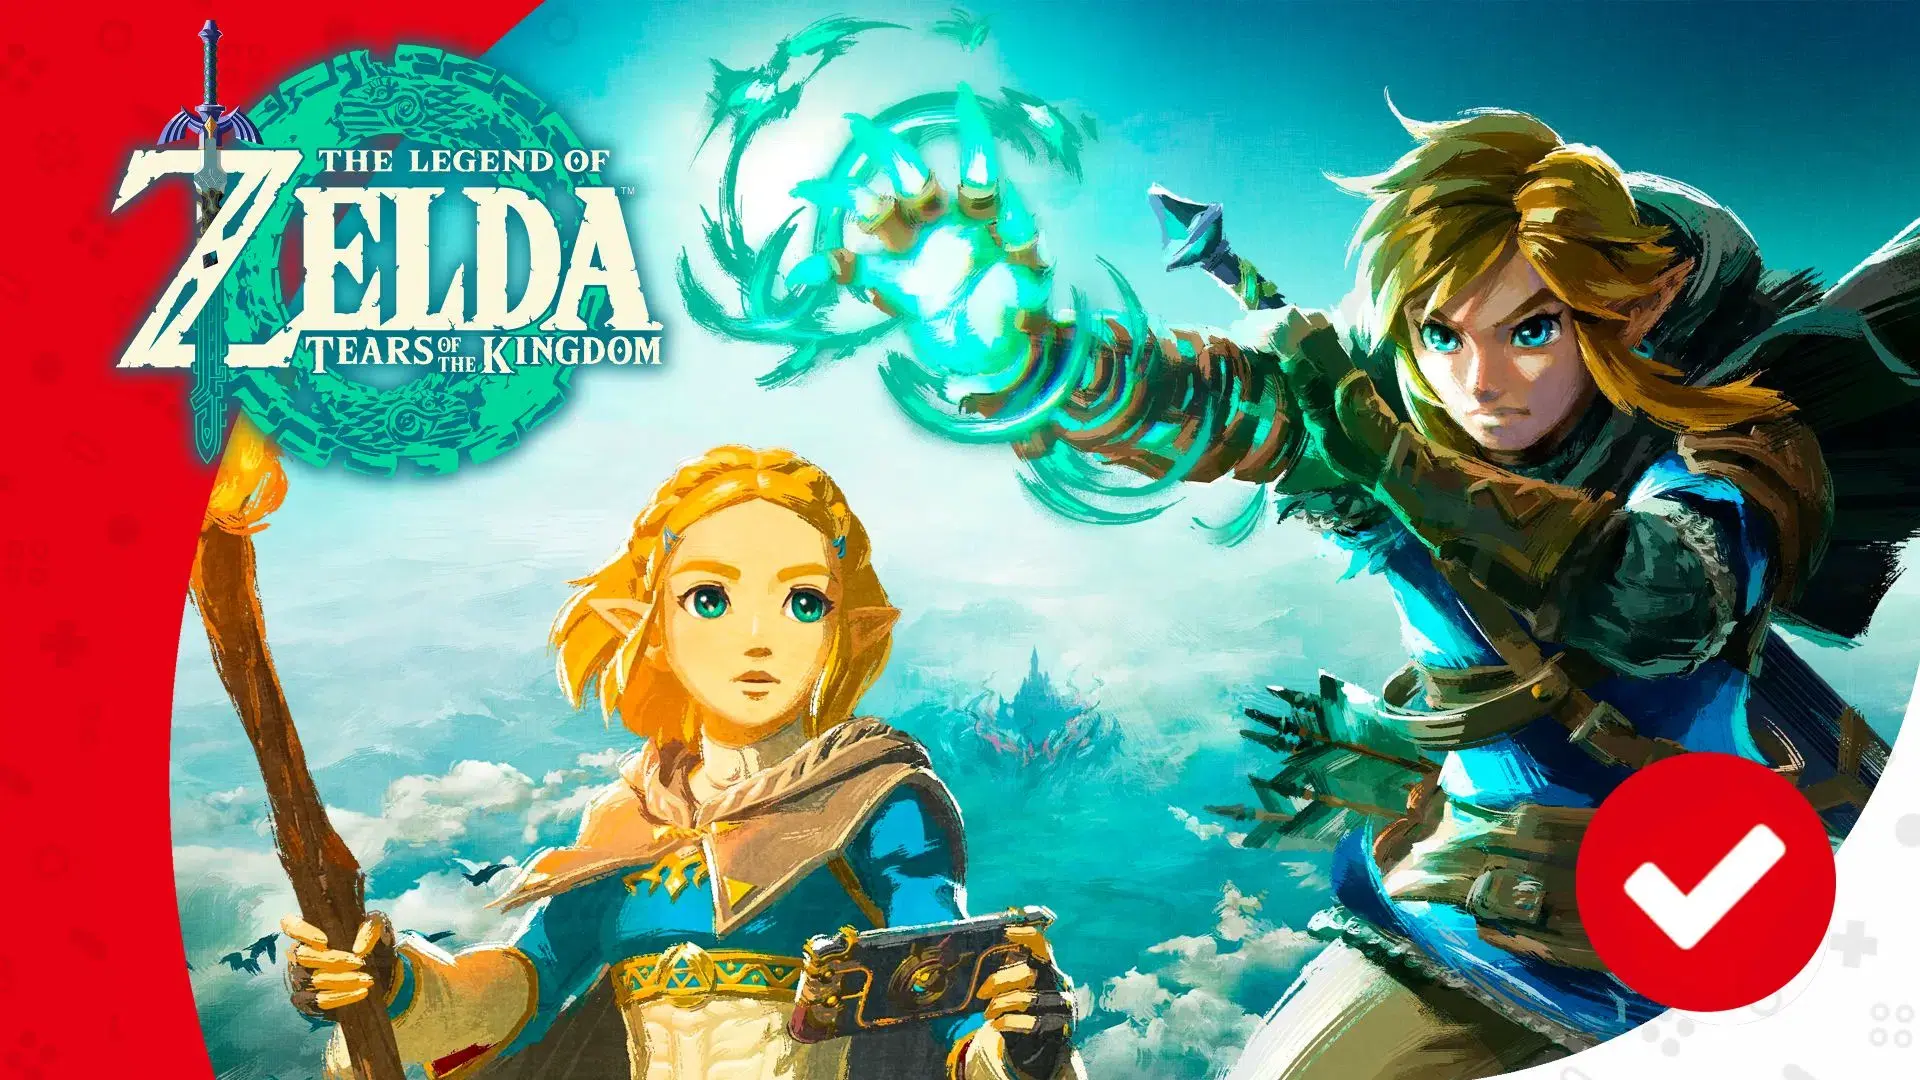 Nintendo eShop Argentina: Zelda TOTK + juego adicional de tu elección  (lista en descripción) 